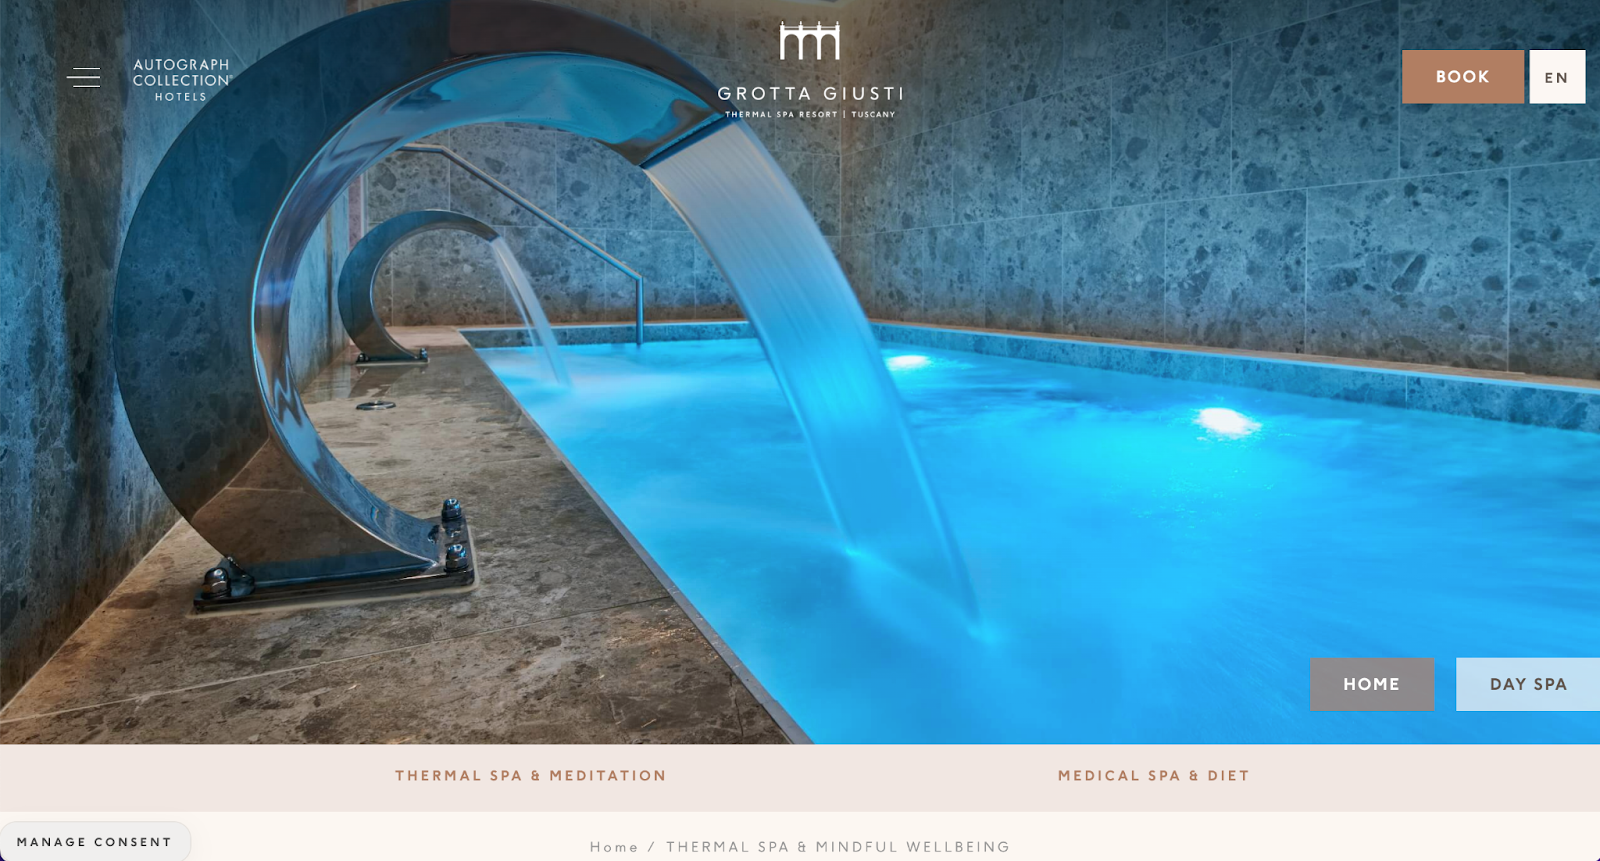 spa website examples, grotto giusti terme hotel spa